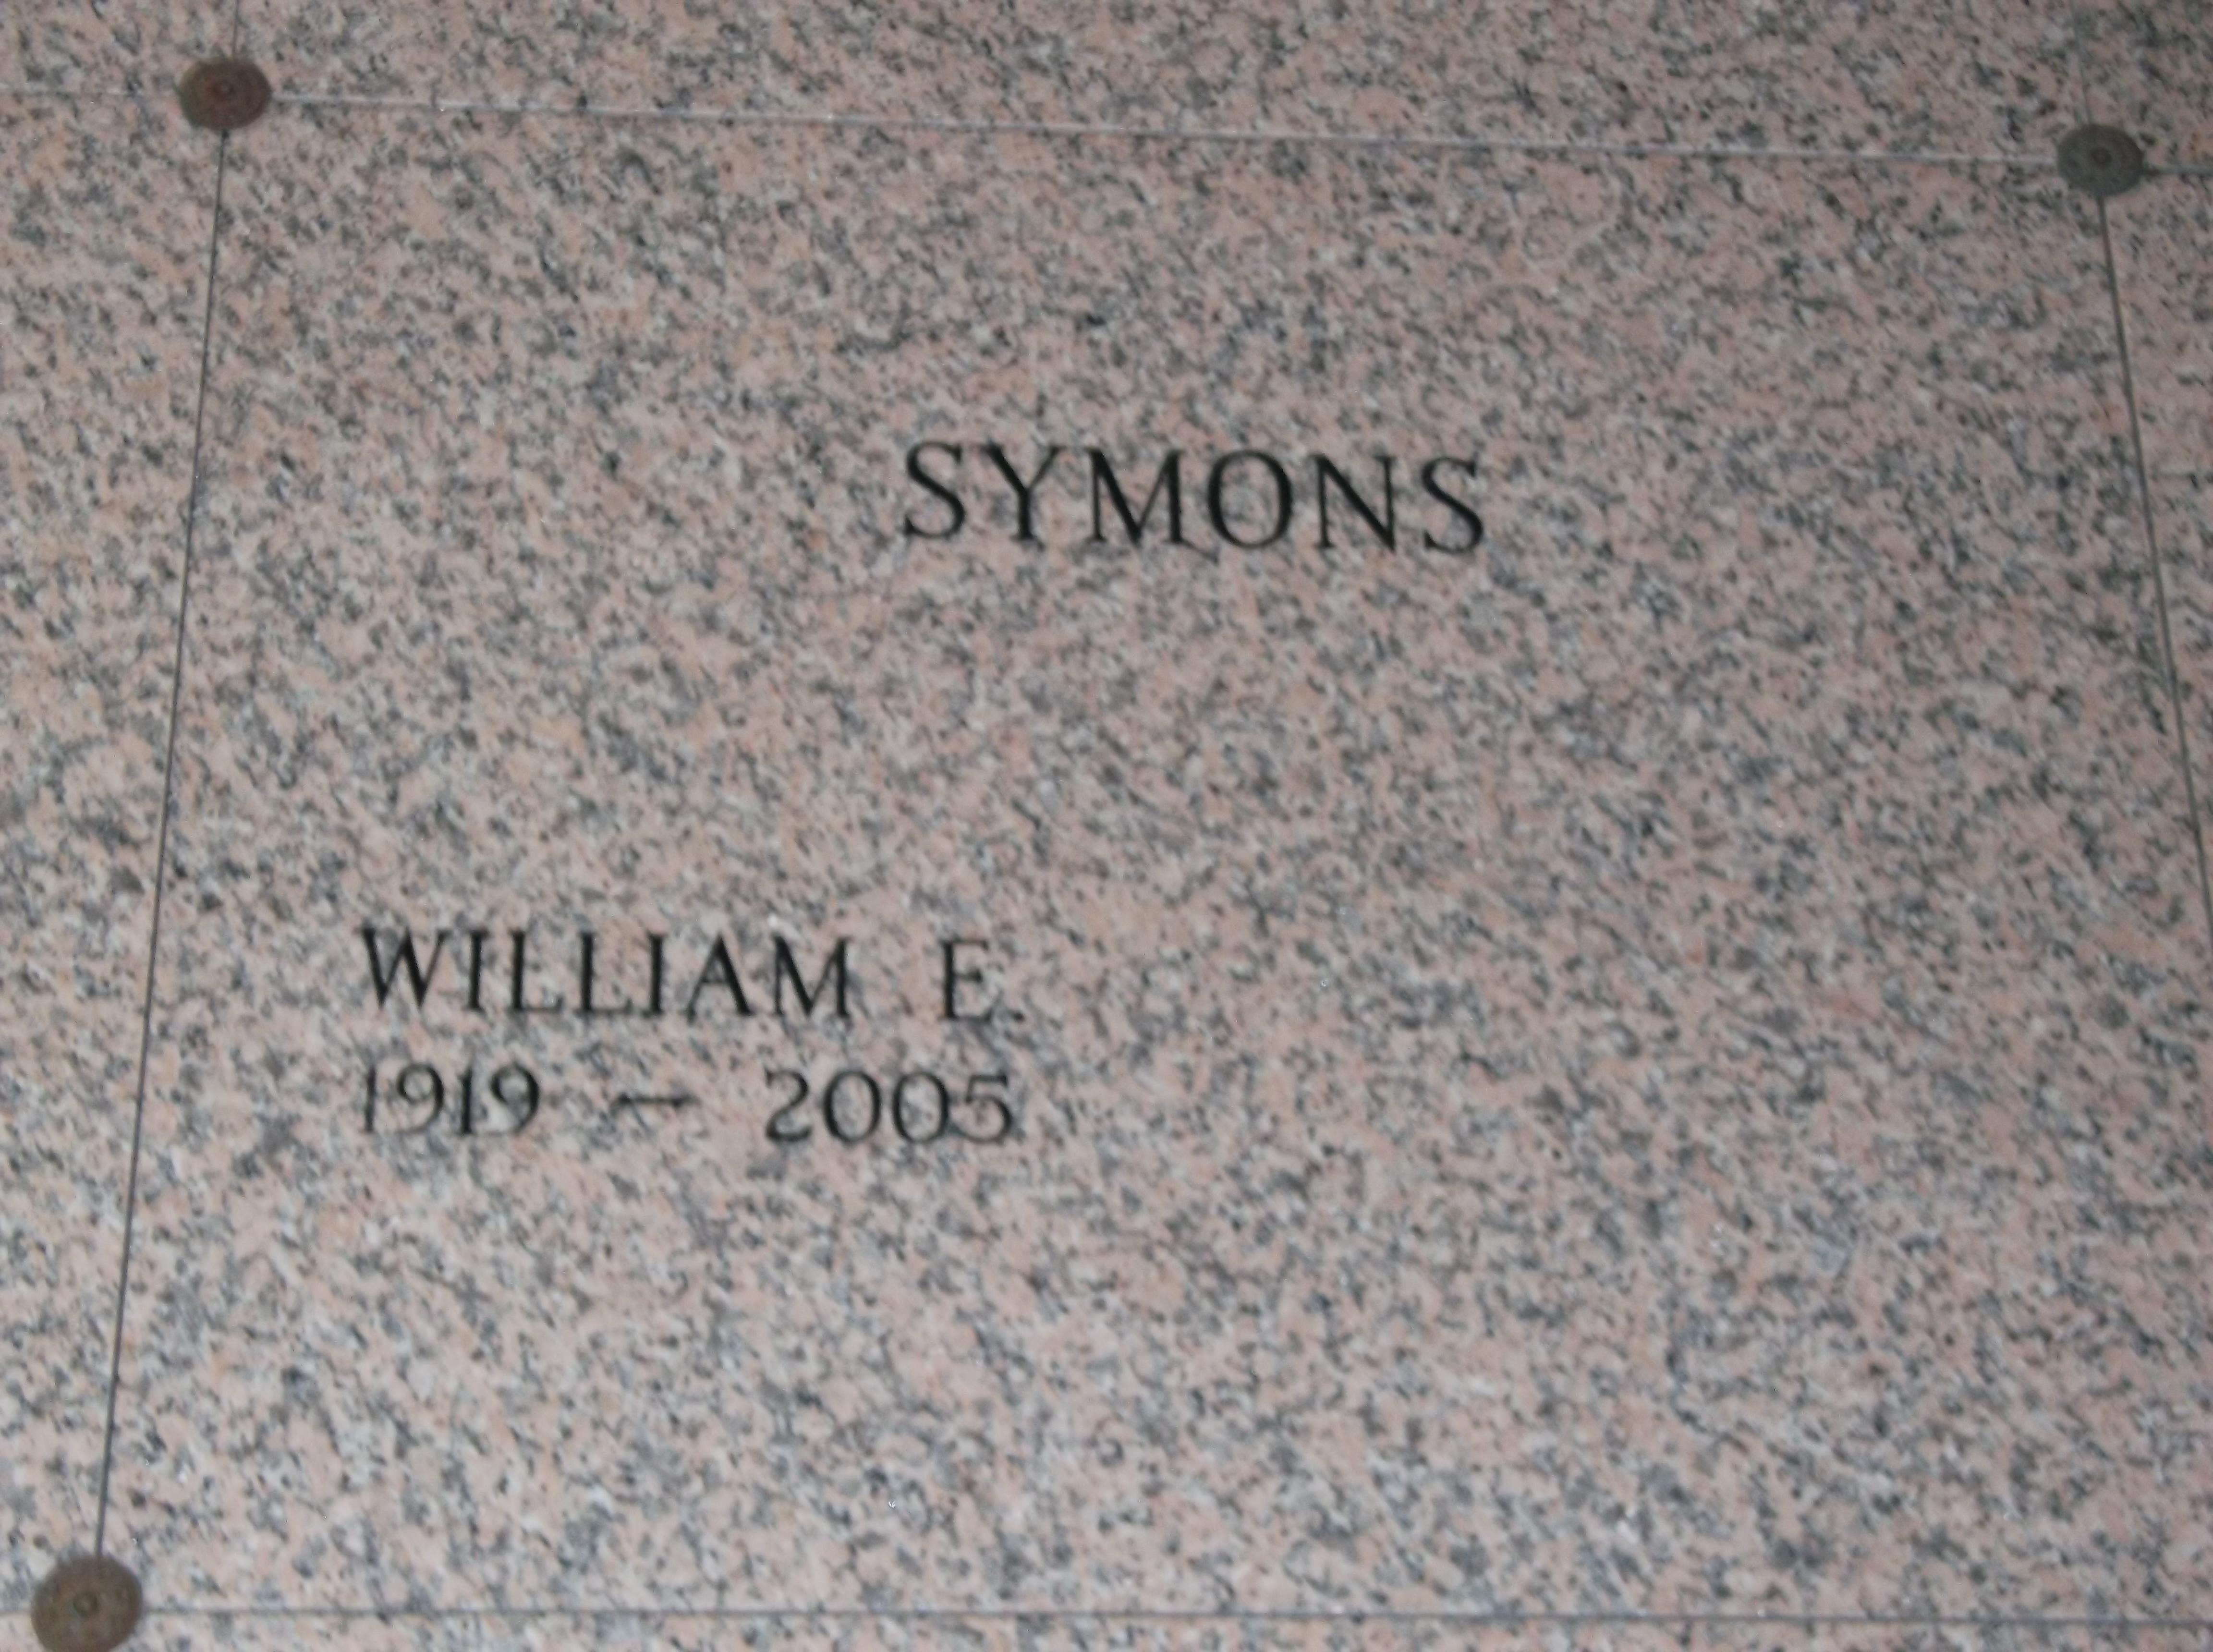 William E Symons